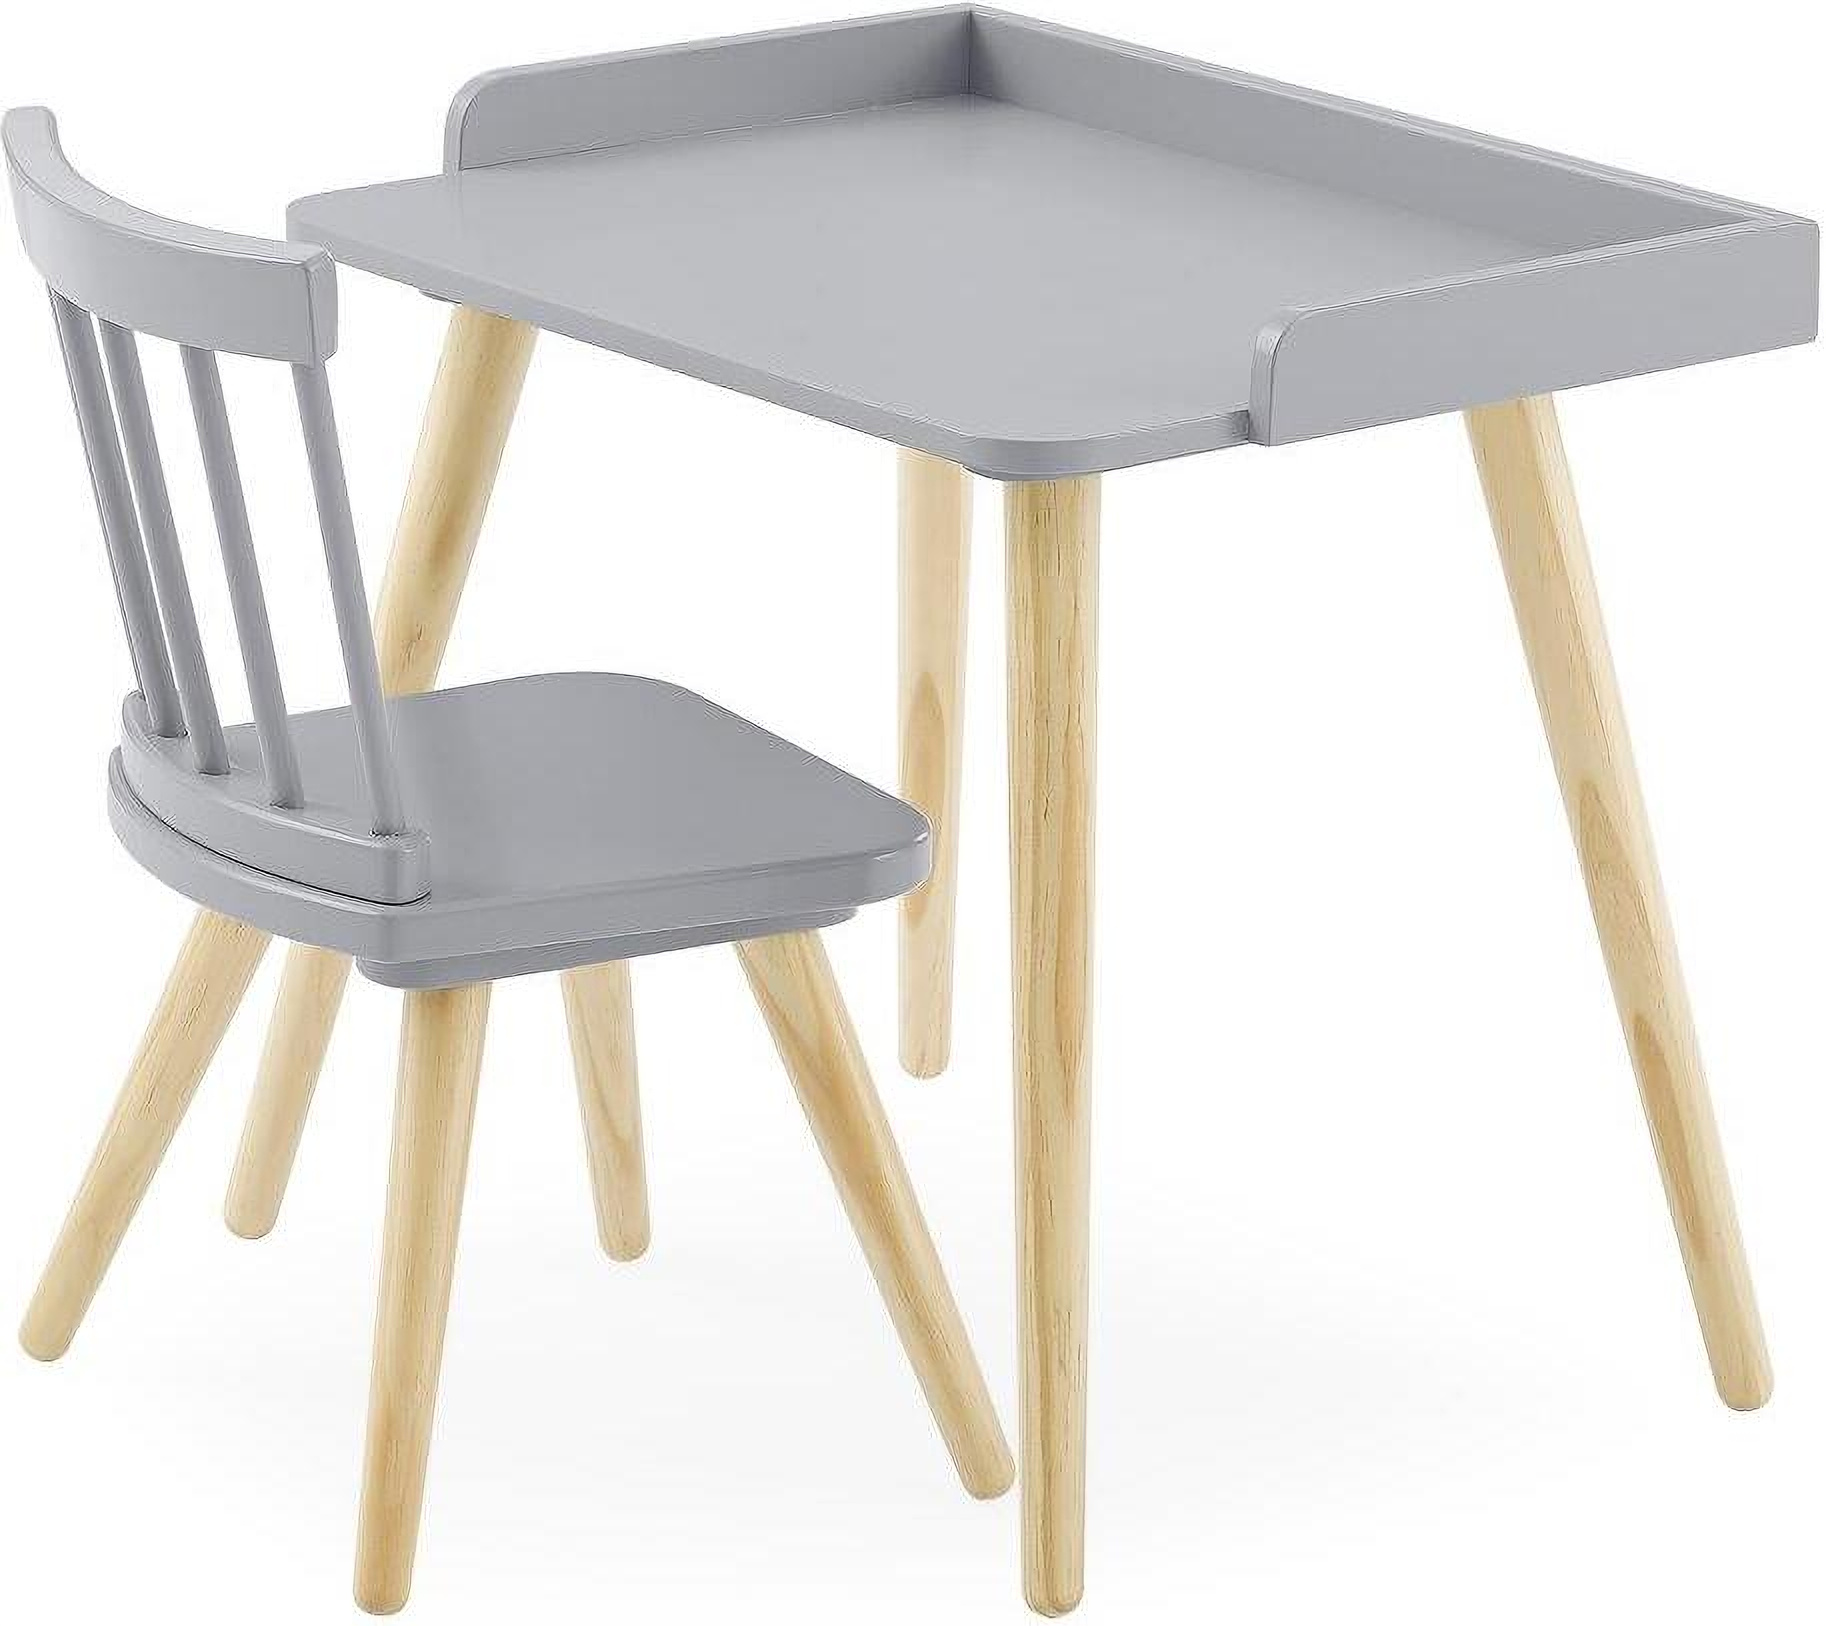 Delta Children Kids' Wood Desk with Hutch & Chair, White